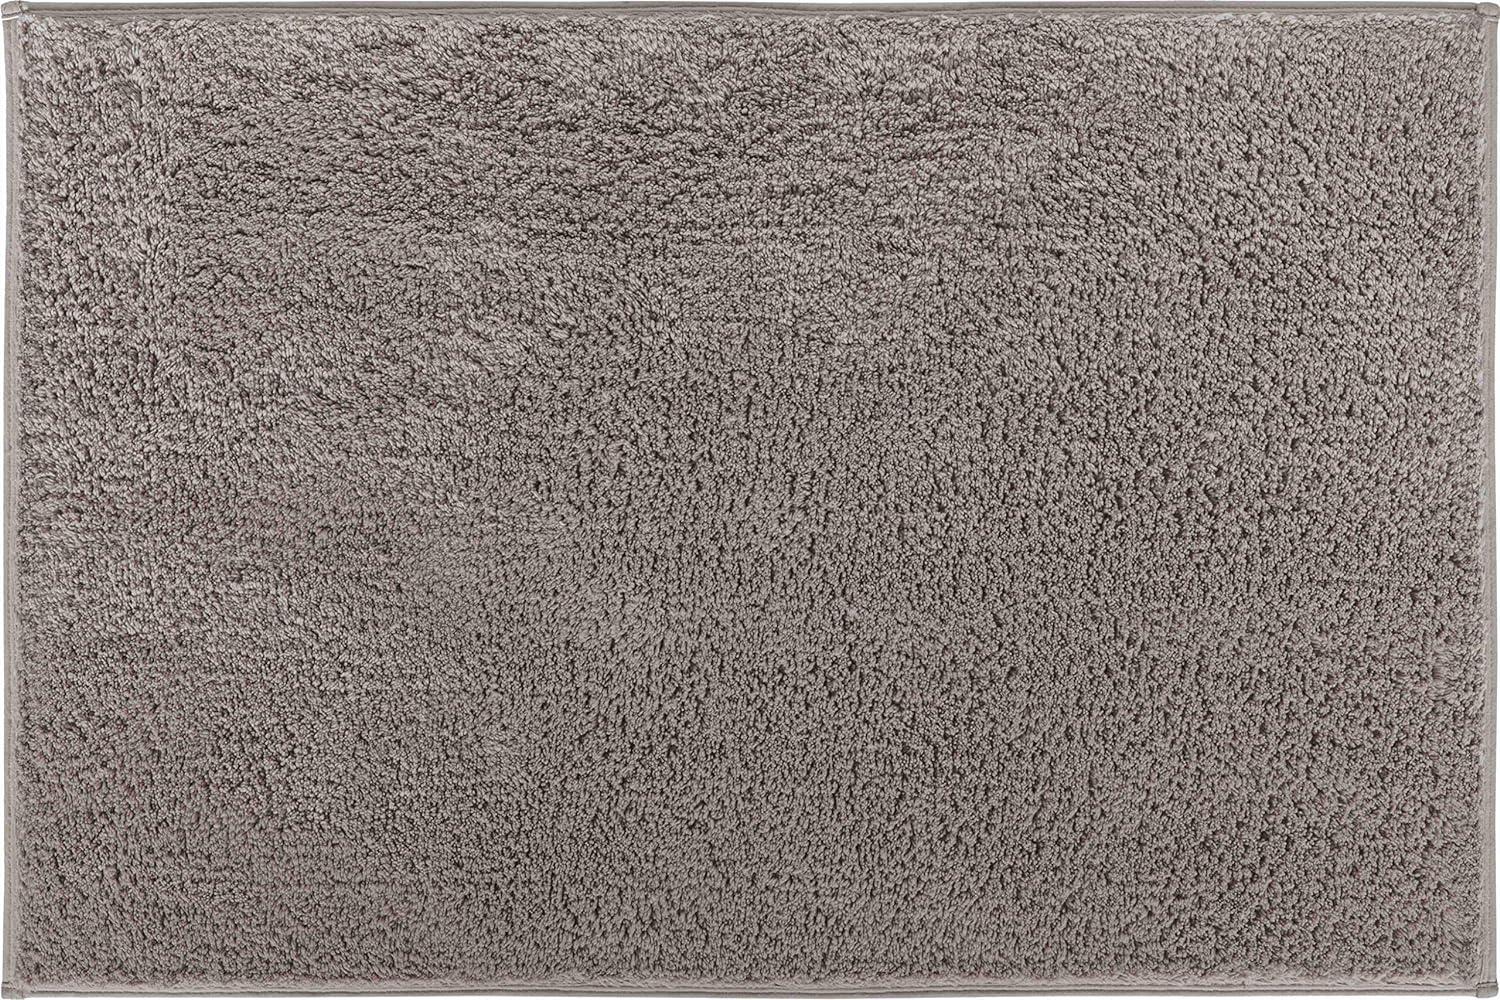 Grund Marla Badteppich, Baumwolle, Braun, 70x120 cm Bild 1